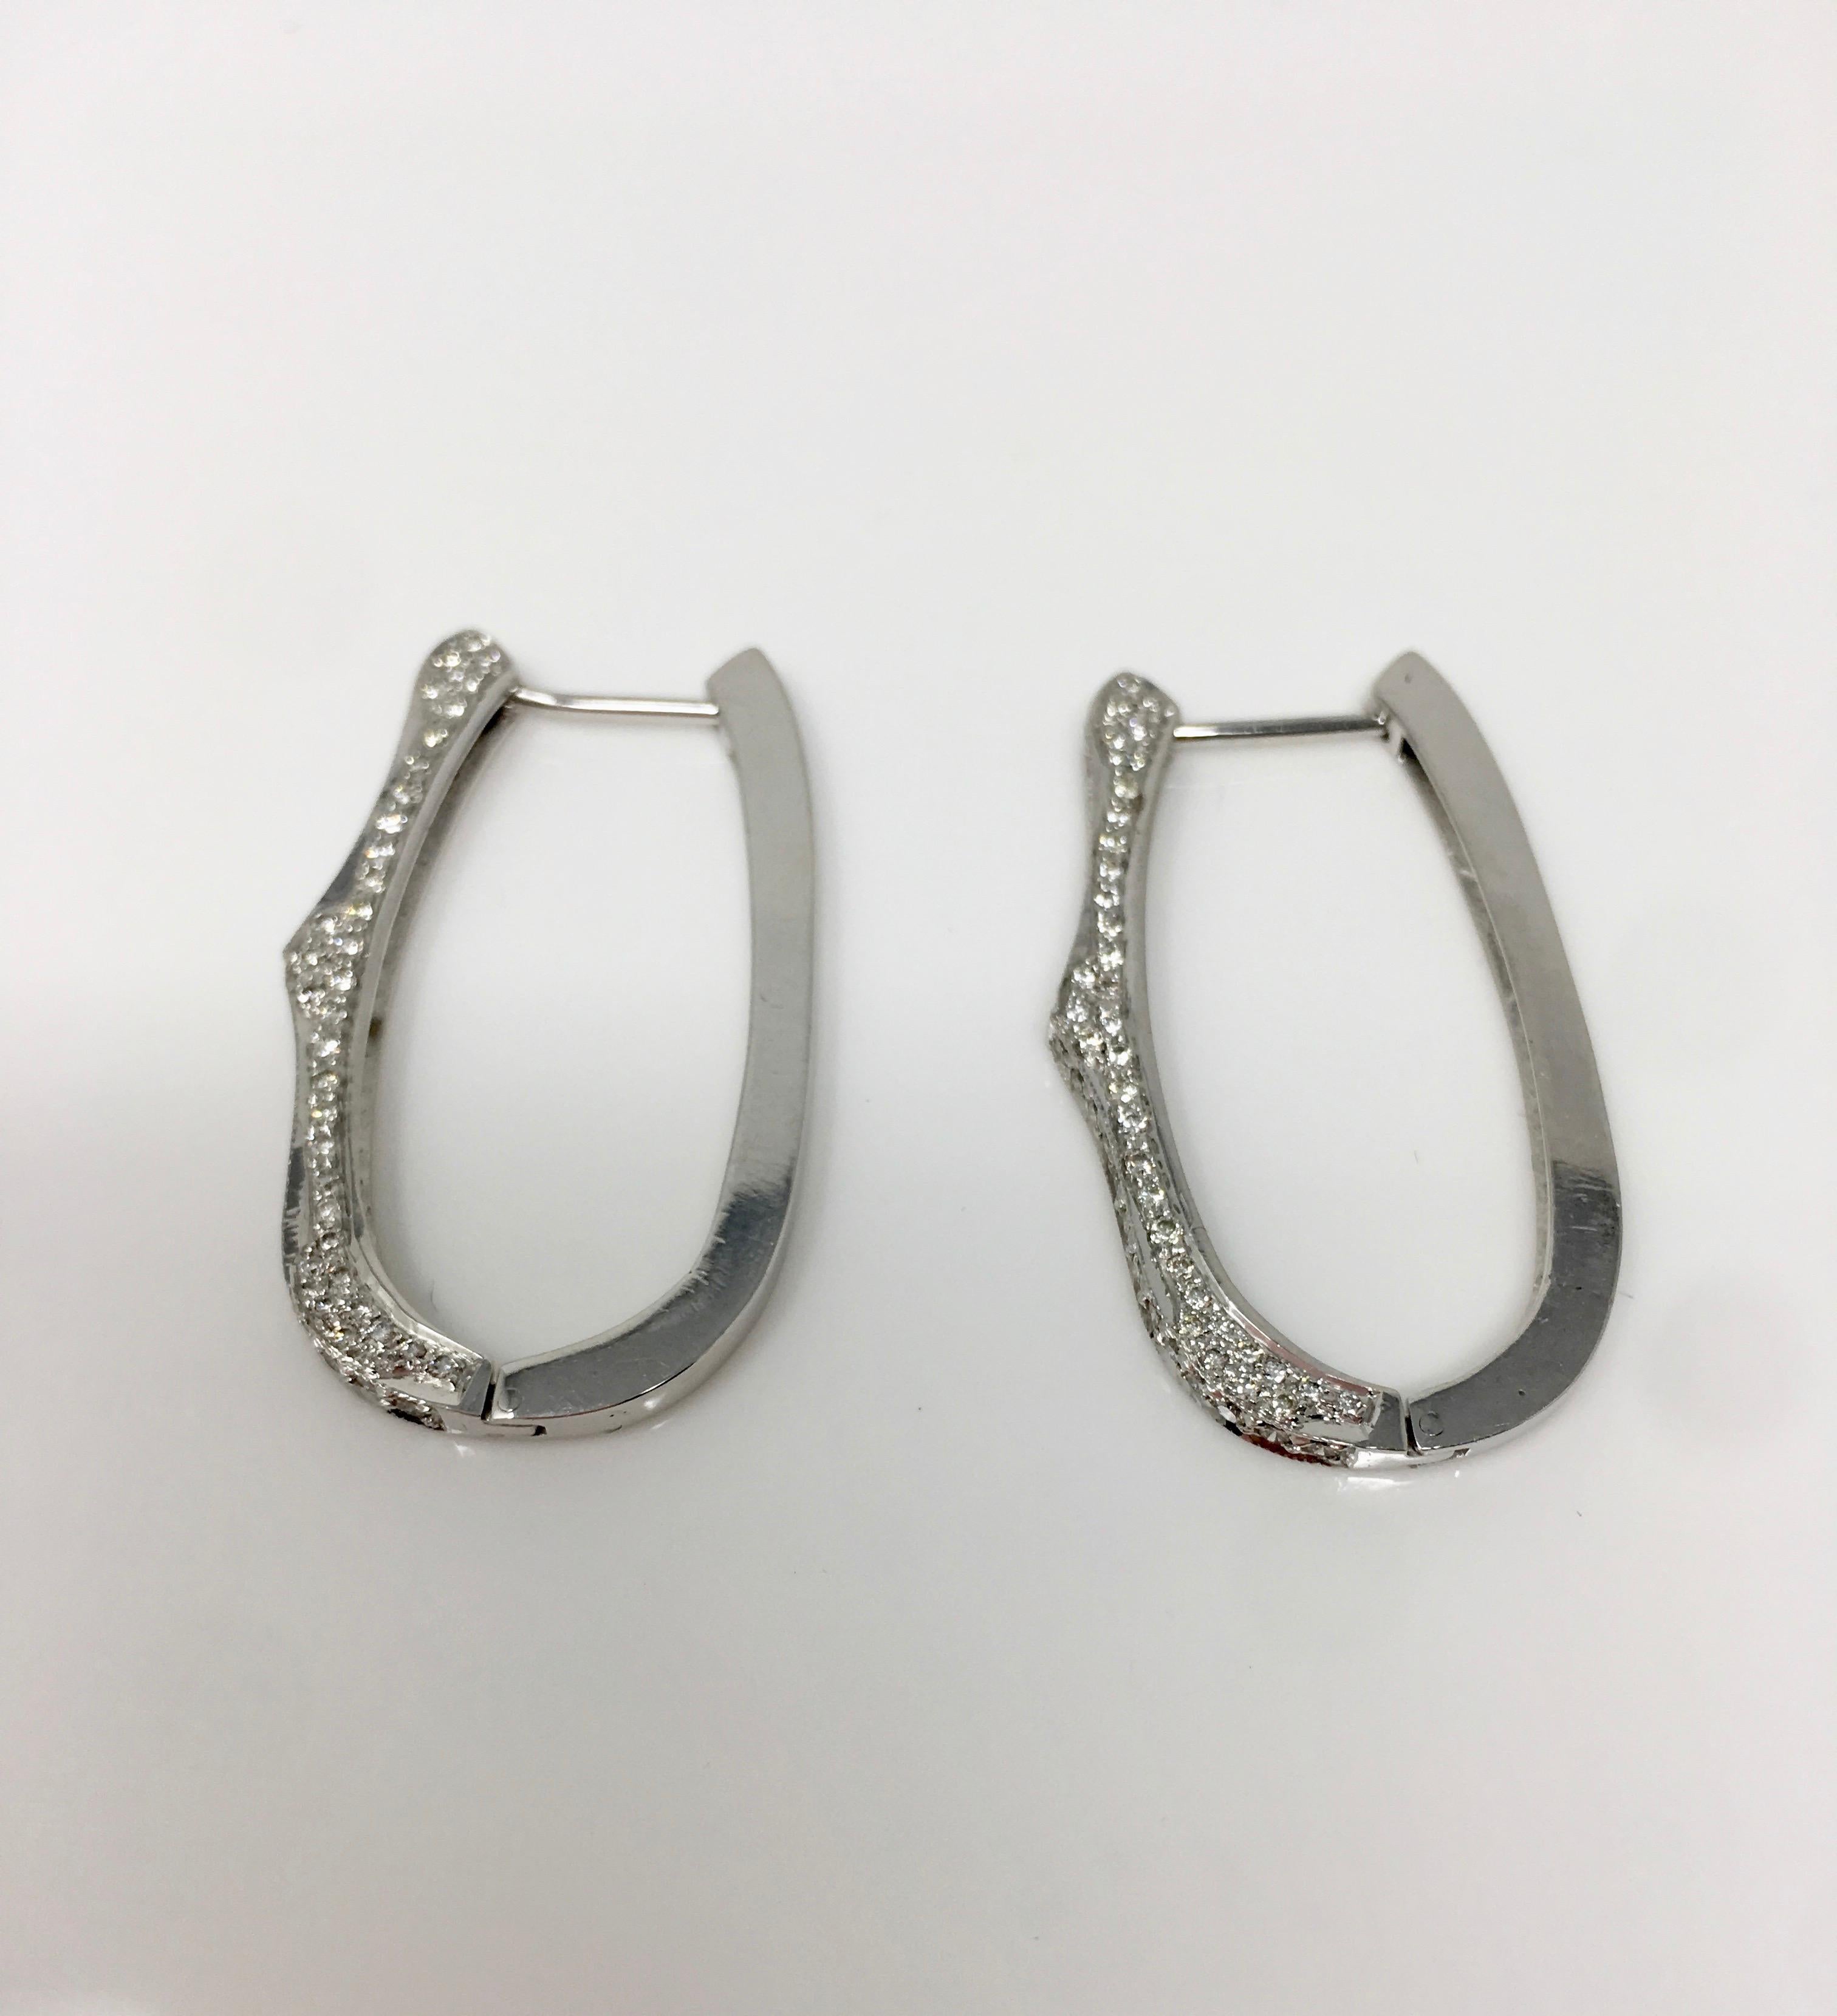 Diese eleganten, schönen und stilvollen weißen runden Brillantring-Ohrringe sind wunderschön von Moguldiam Inc. handgefertigt. Das Gesamtgewicht der Diamanten ist 1,34 Karat und hat GH Farbe und VS Klarheit. Das Goldgewicht beträgt 16.200 Gramm. Die